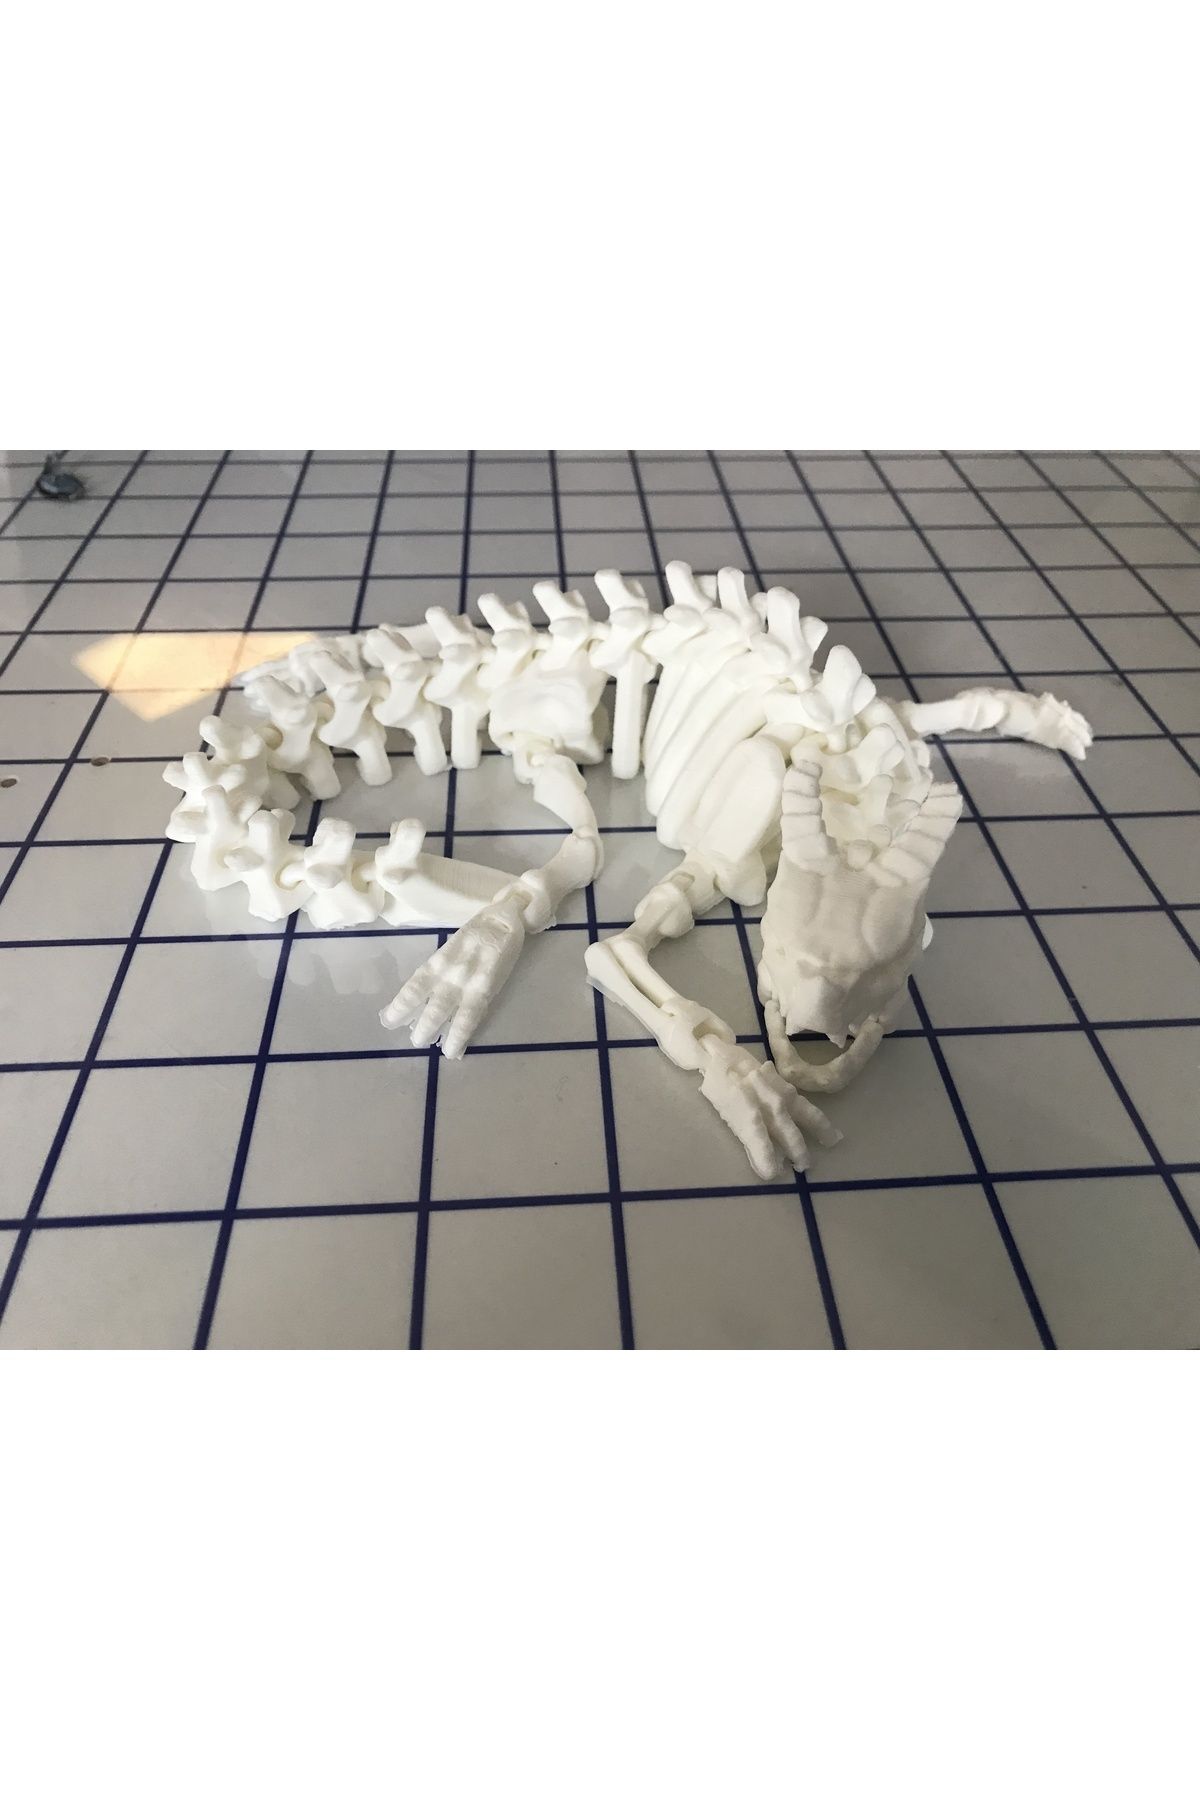 3Duman Eklemli Iskelet Ejderha Figürü - Beyaz - 13cm